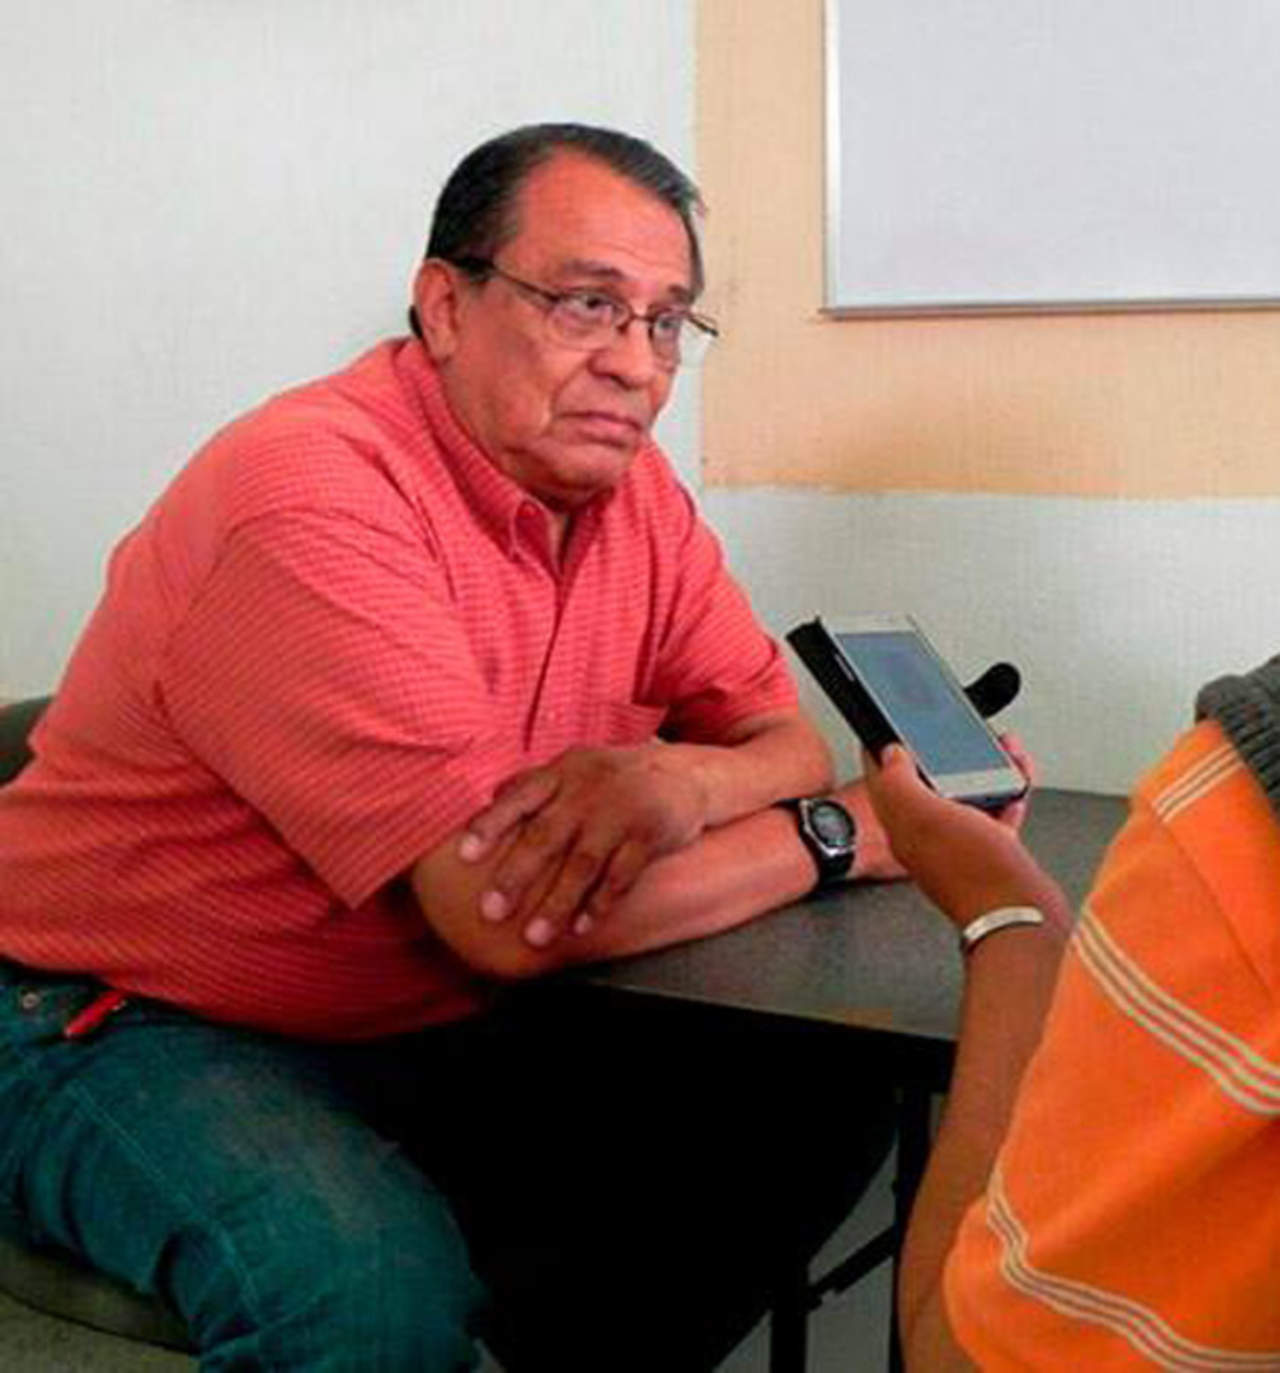 El reportero Maximino Rodríguez Palacios fue asesinado el pasado 14 de abril en el estacionamiento de una plaza comercial, donde había acudido a realizar compras en compañía de su esposa. (ARCHIVO)

